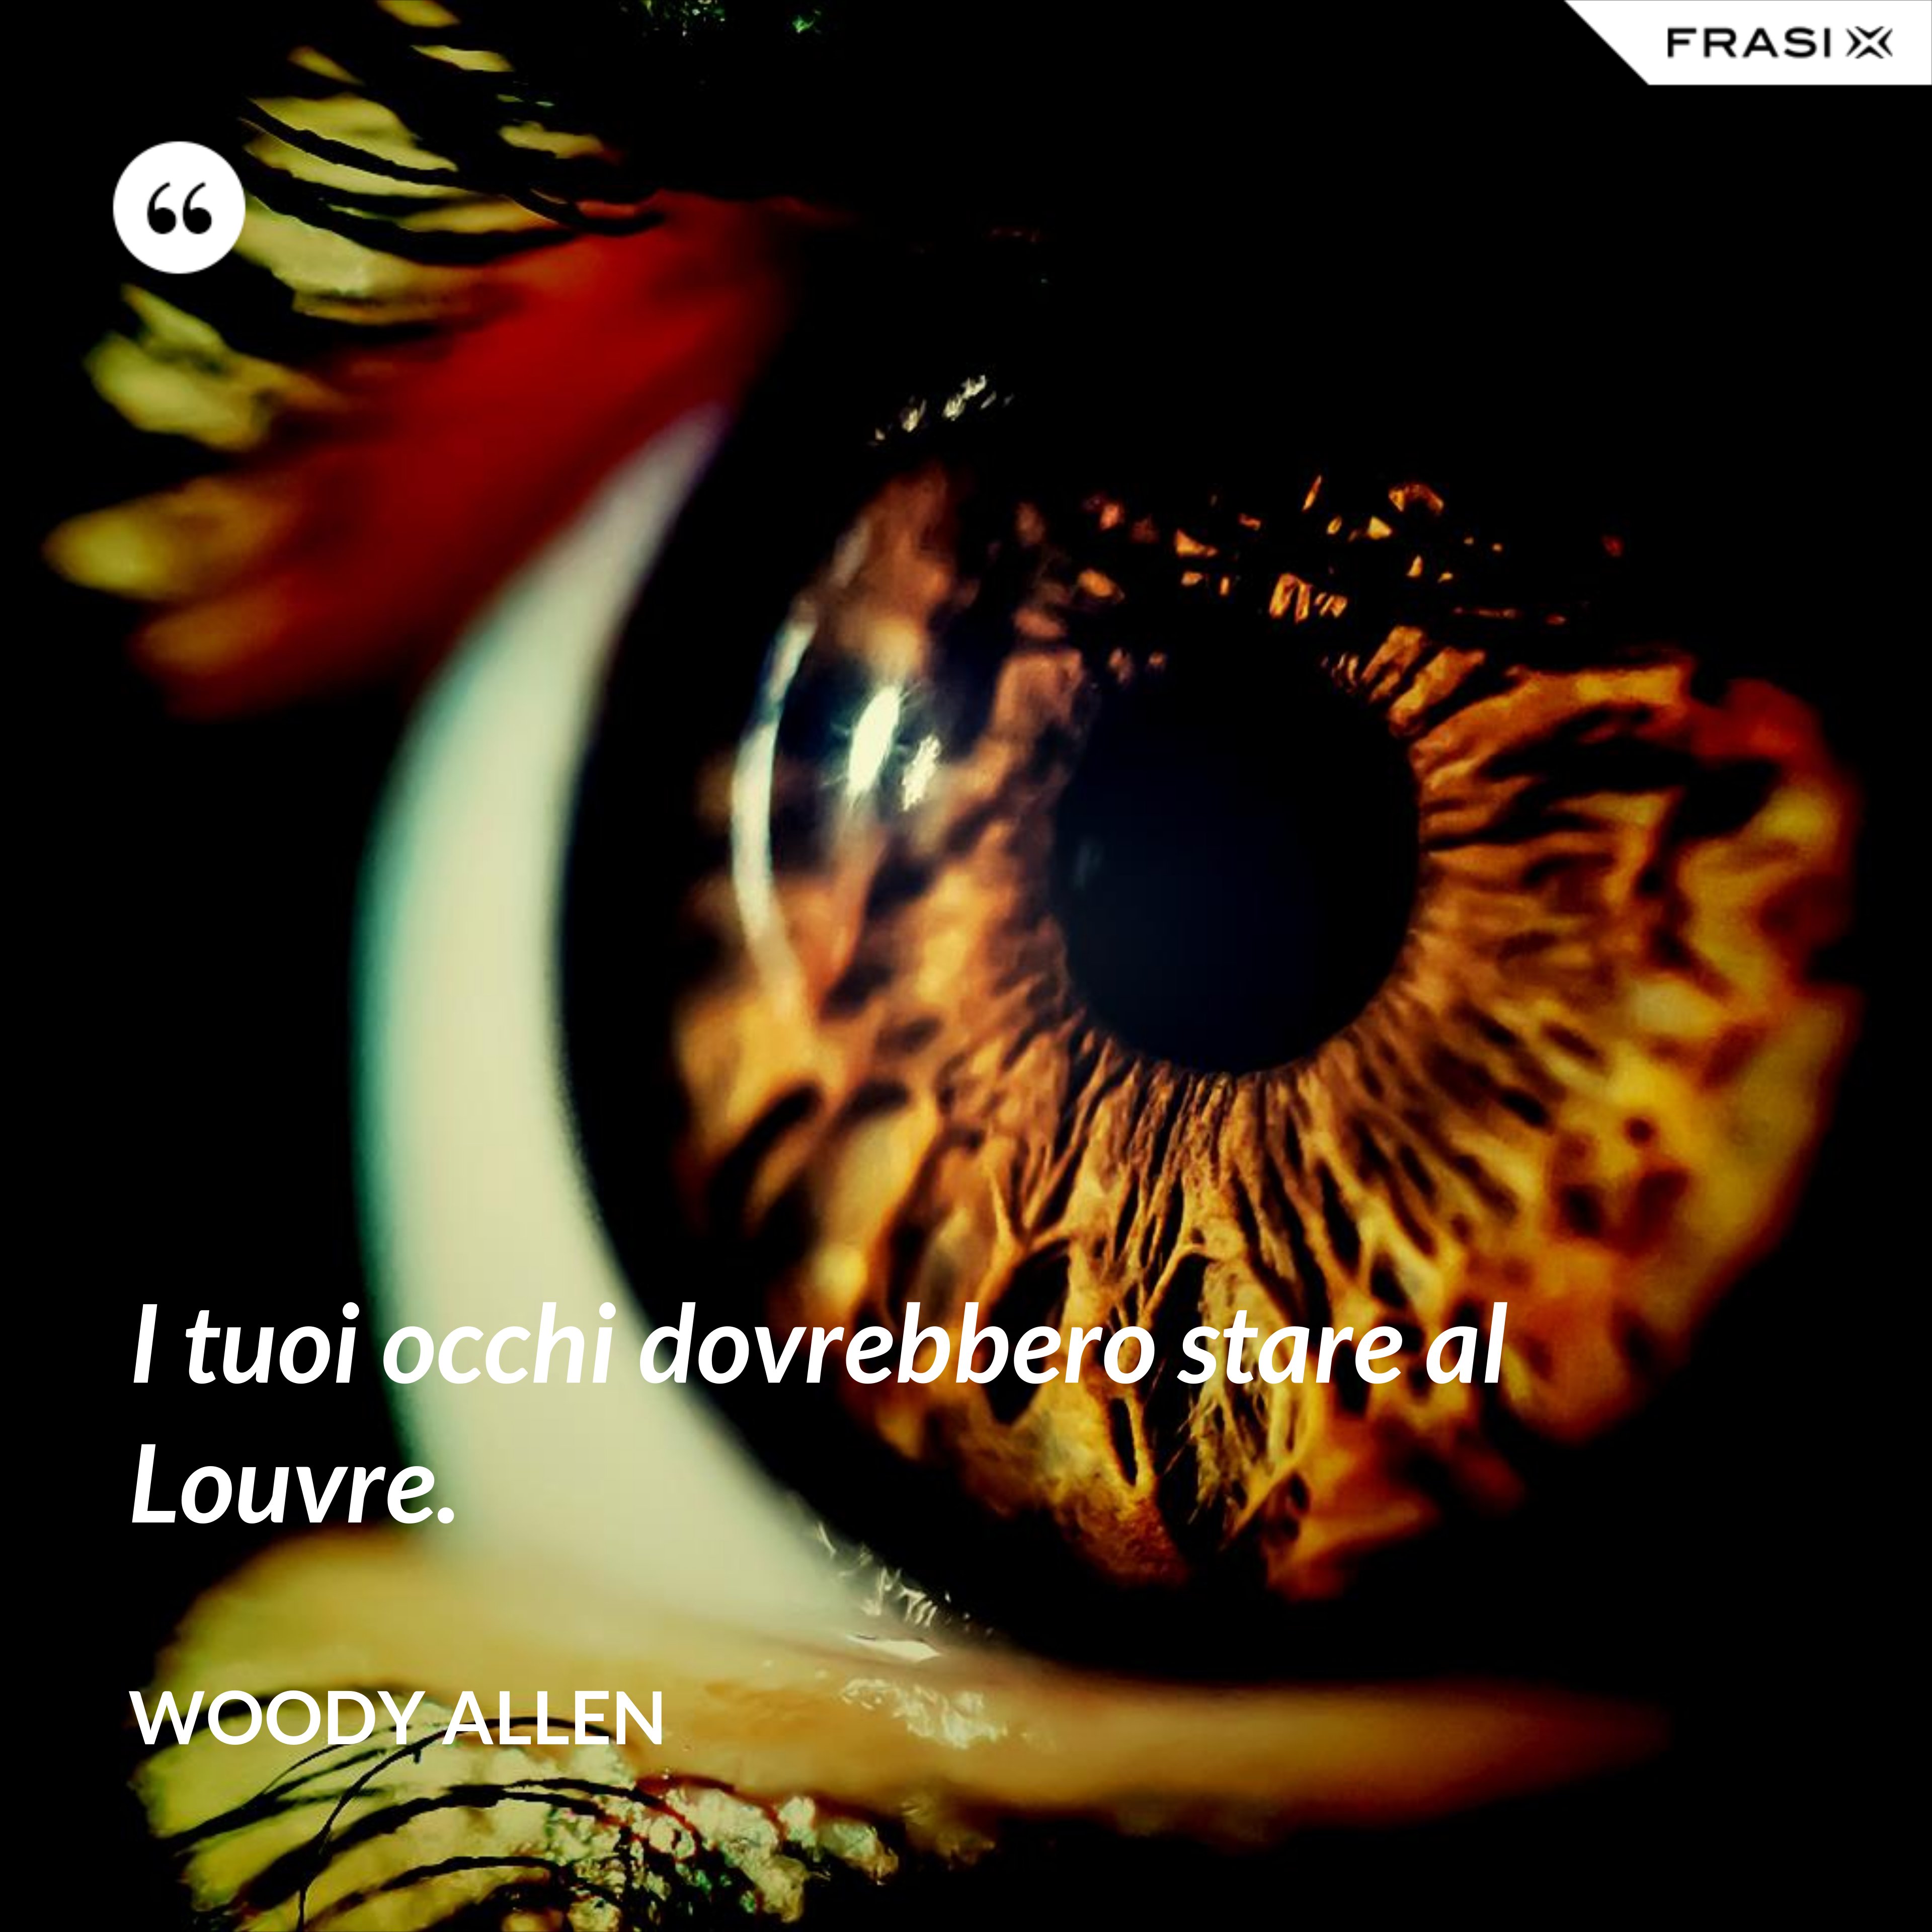 I tuoi occhi dovrebbero stare al Louvre. - Woody Allen